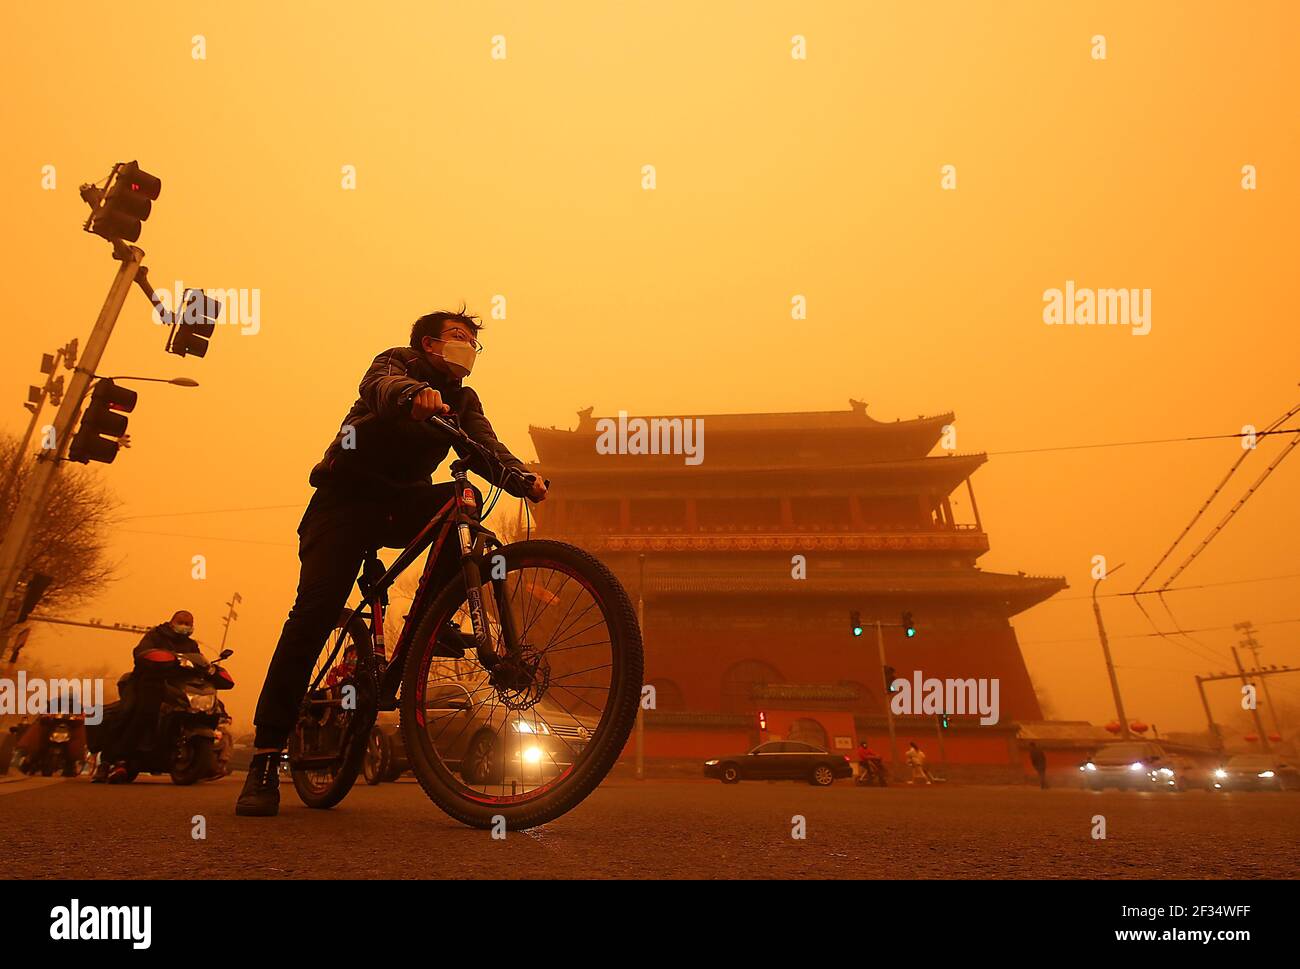 Peking, China. März 2021, 15th. Die Chinesen fahren am Montag, den 15. März 2021, in Peking an einem Tempel vorbei, der von einem dicken Sandsturm umhüllt ist. In einigen Gebieten rund um die Hauptstadt verringerte der starke Sandsturm die Sicht auf weniger als 500 Meter und "ist auch das stärkste Staub- und Sandwetter, das China seit fast 10 Jahren trifft", so die chinesische Meteorologische Regierung. Foto von Stephen Shaver/UPI Kredit: UPI/Alamy Live Nachrichten Stockfoto